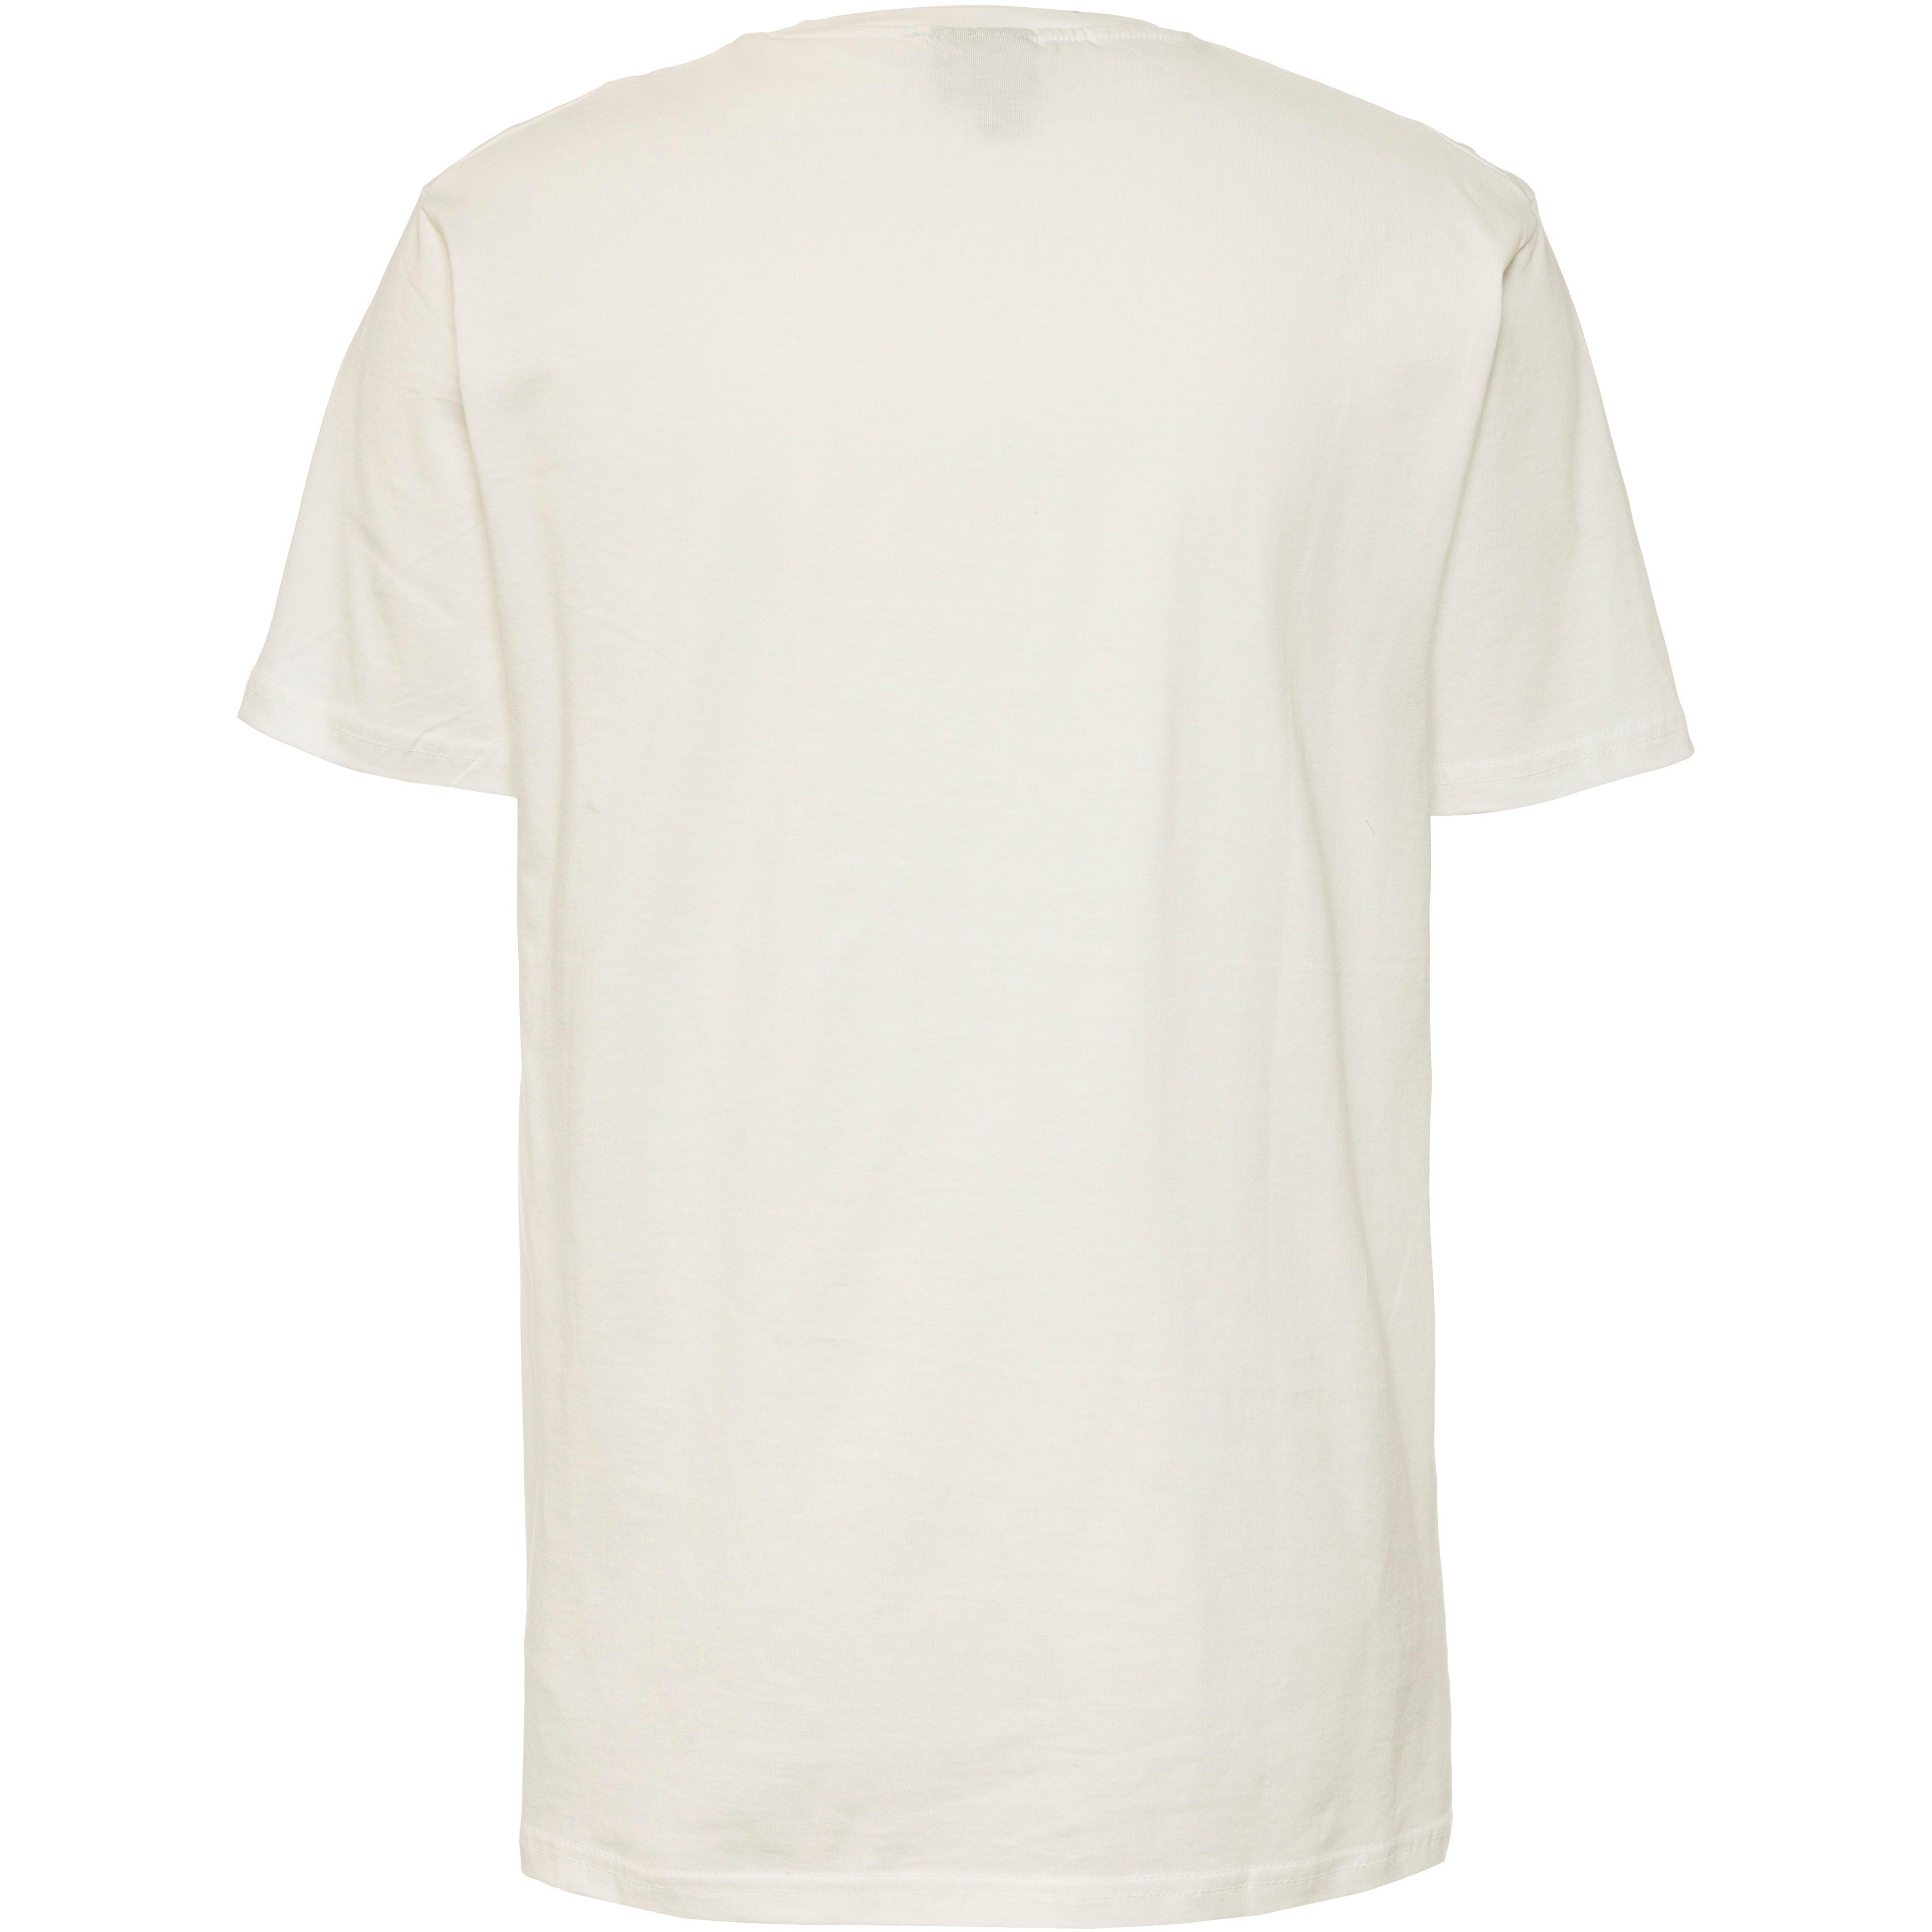 Ellesse Fuenti T-Shirt Herren white SportScheck Online von Shop kaufen im